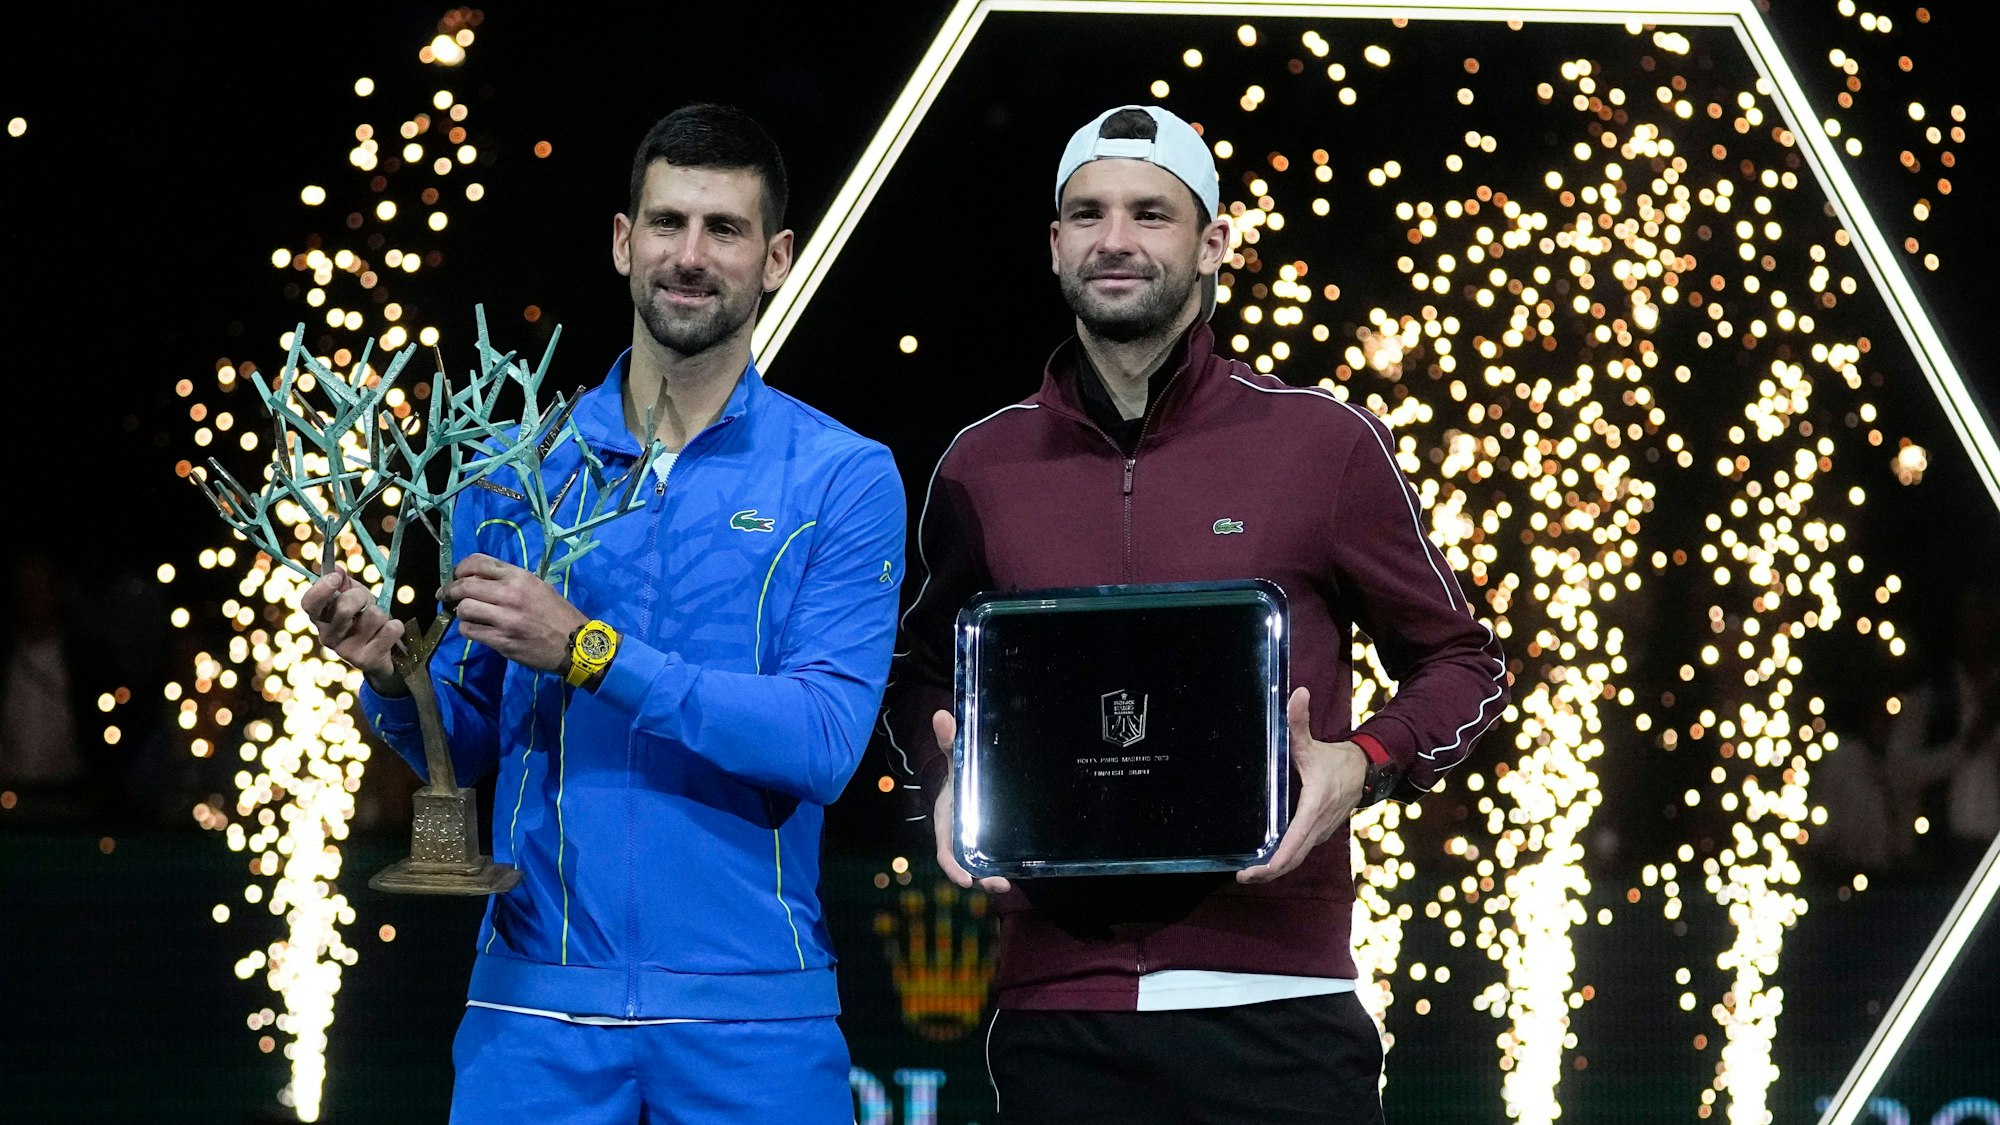 Novak Djokvic und Grigor Dimitrow bei der Siegerehrung in Paris-Bercy.